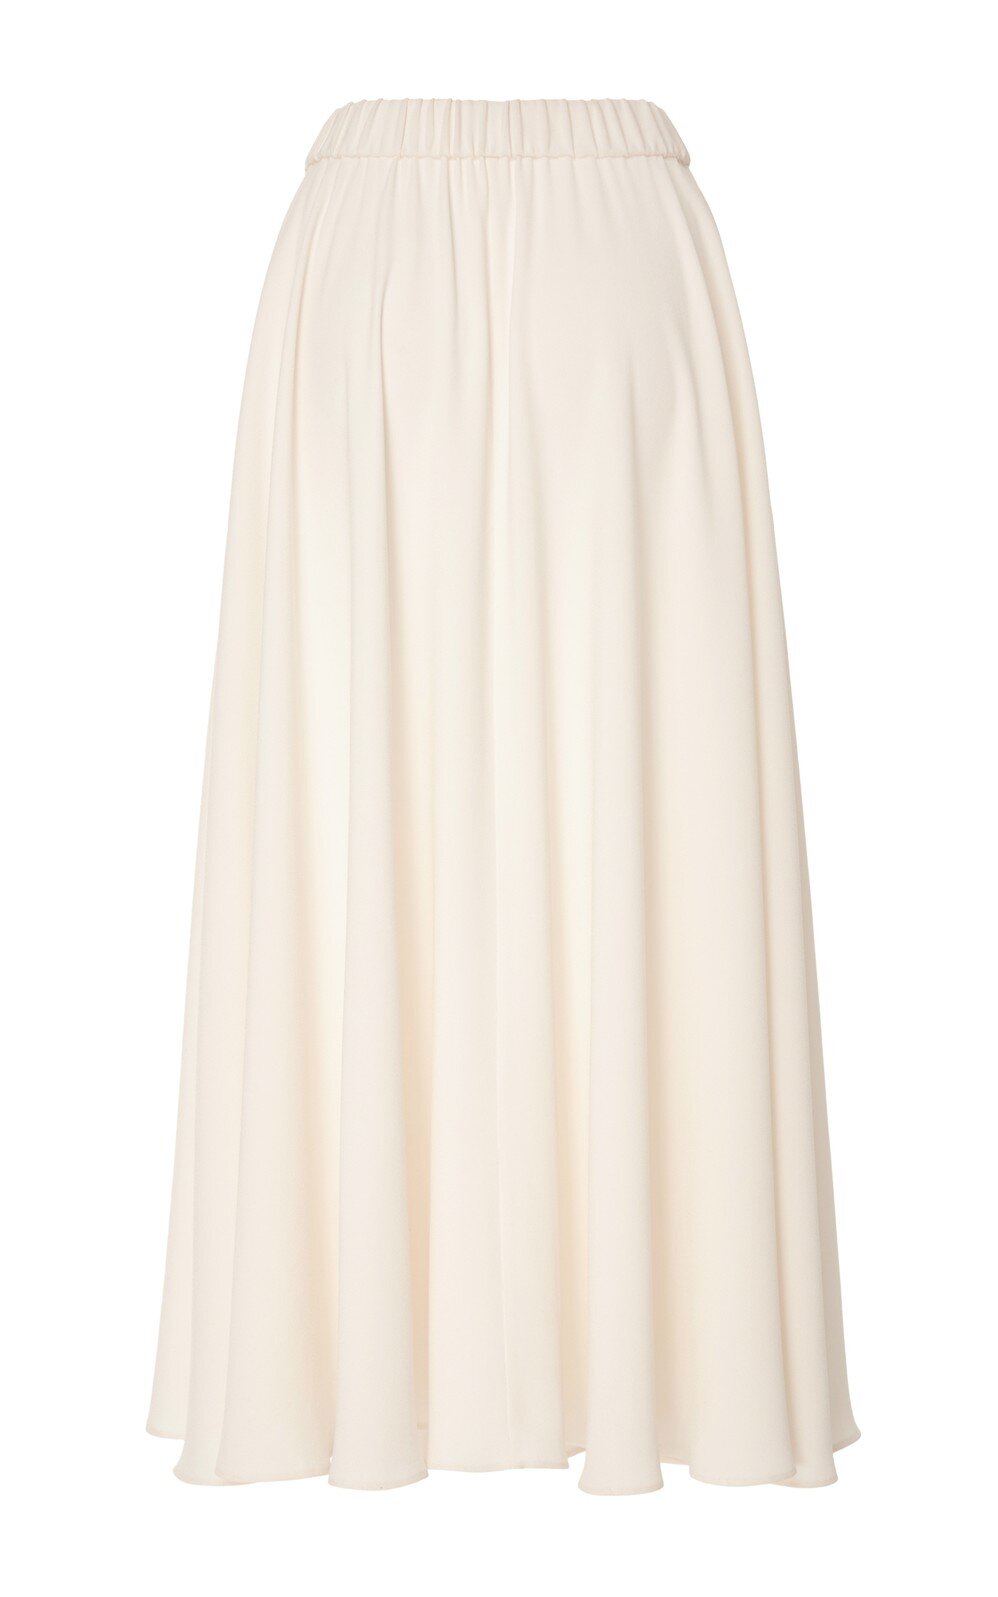 large_co-white-ivory-high-waist-maxi-skirt.jpg